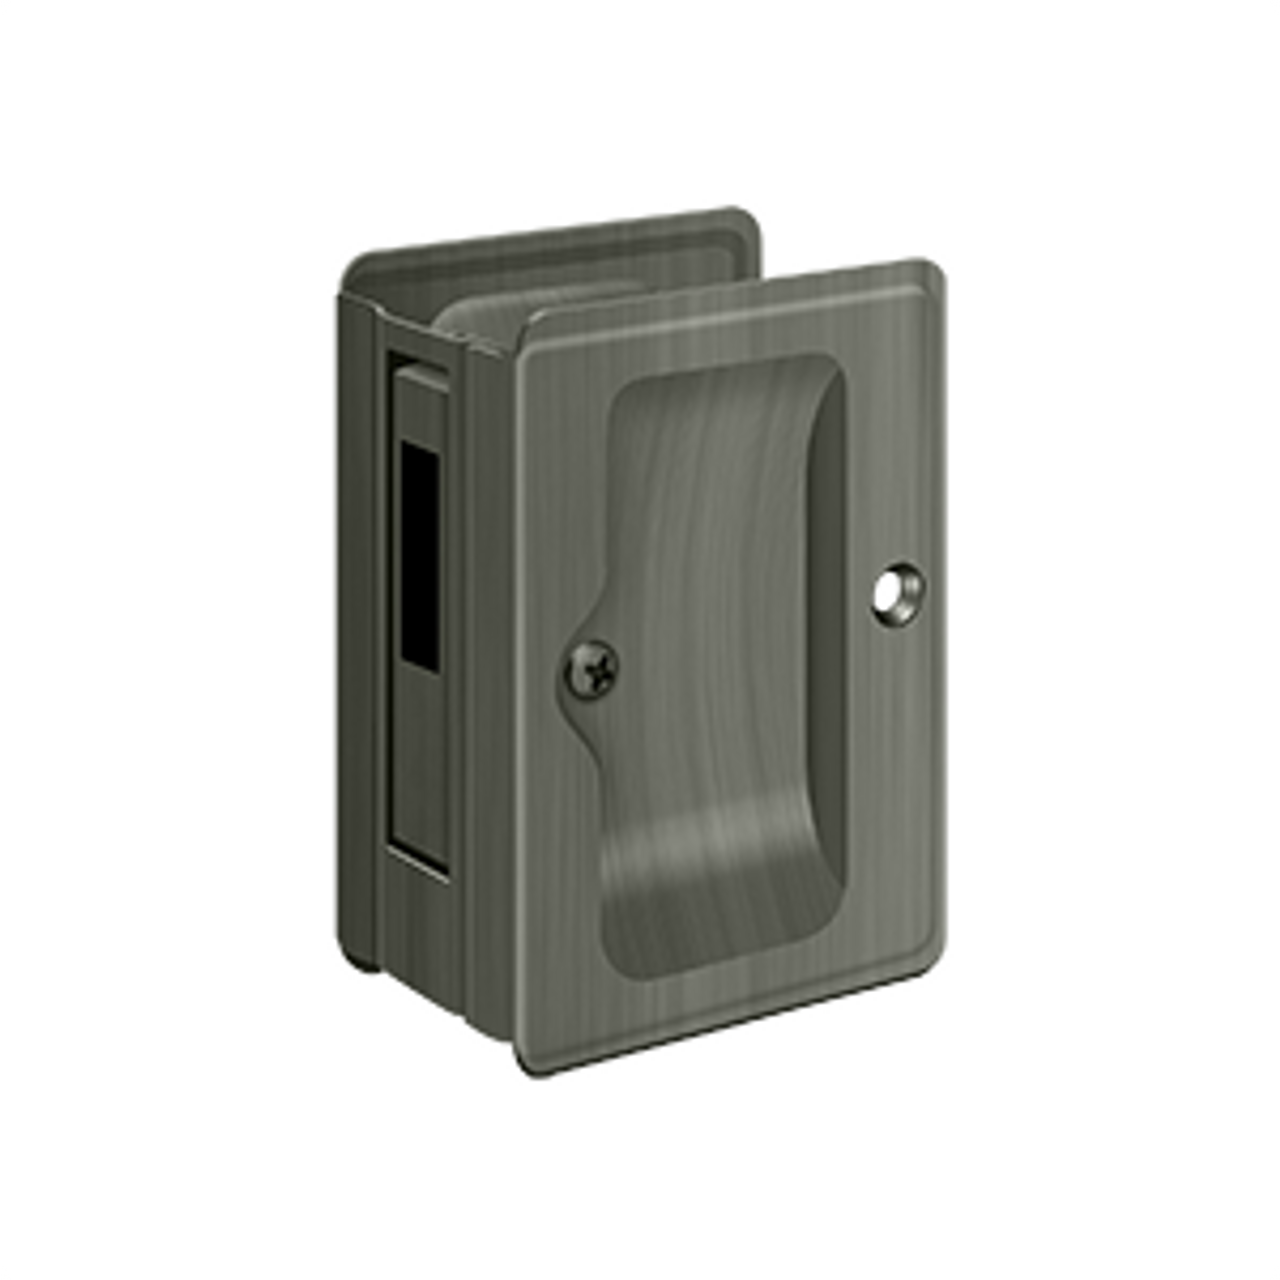 Deltana SDAR325 POCKET LOCK, ADJUSTABLE, 3-1/4" X 2-1/4" SLIDING DOOR RECEIVER SOLID BRASS